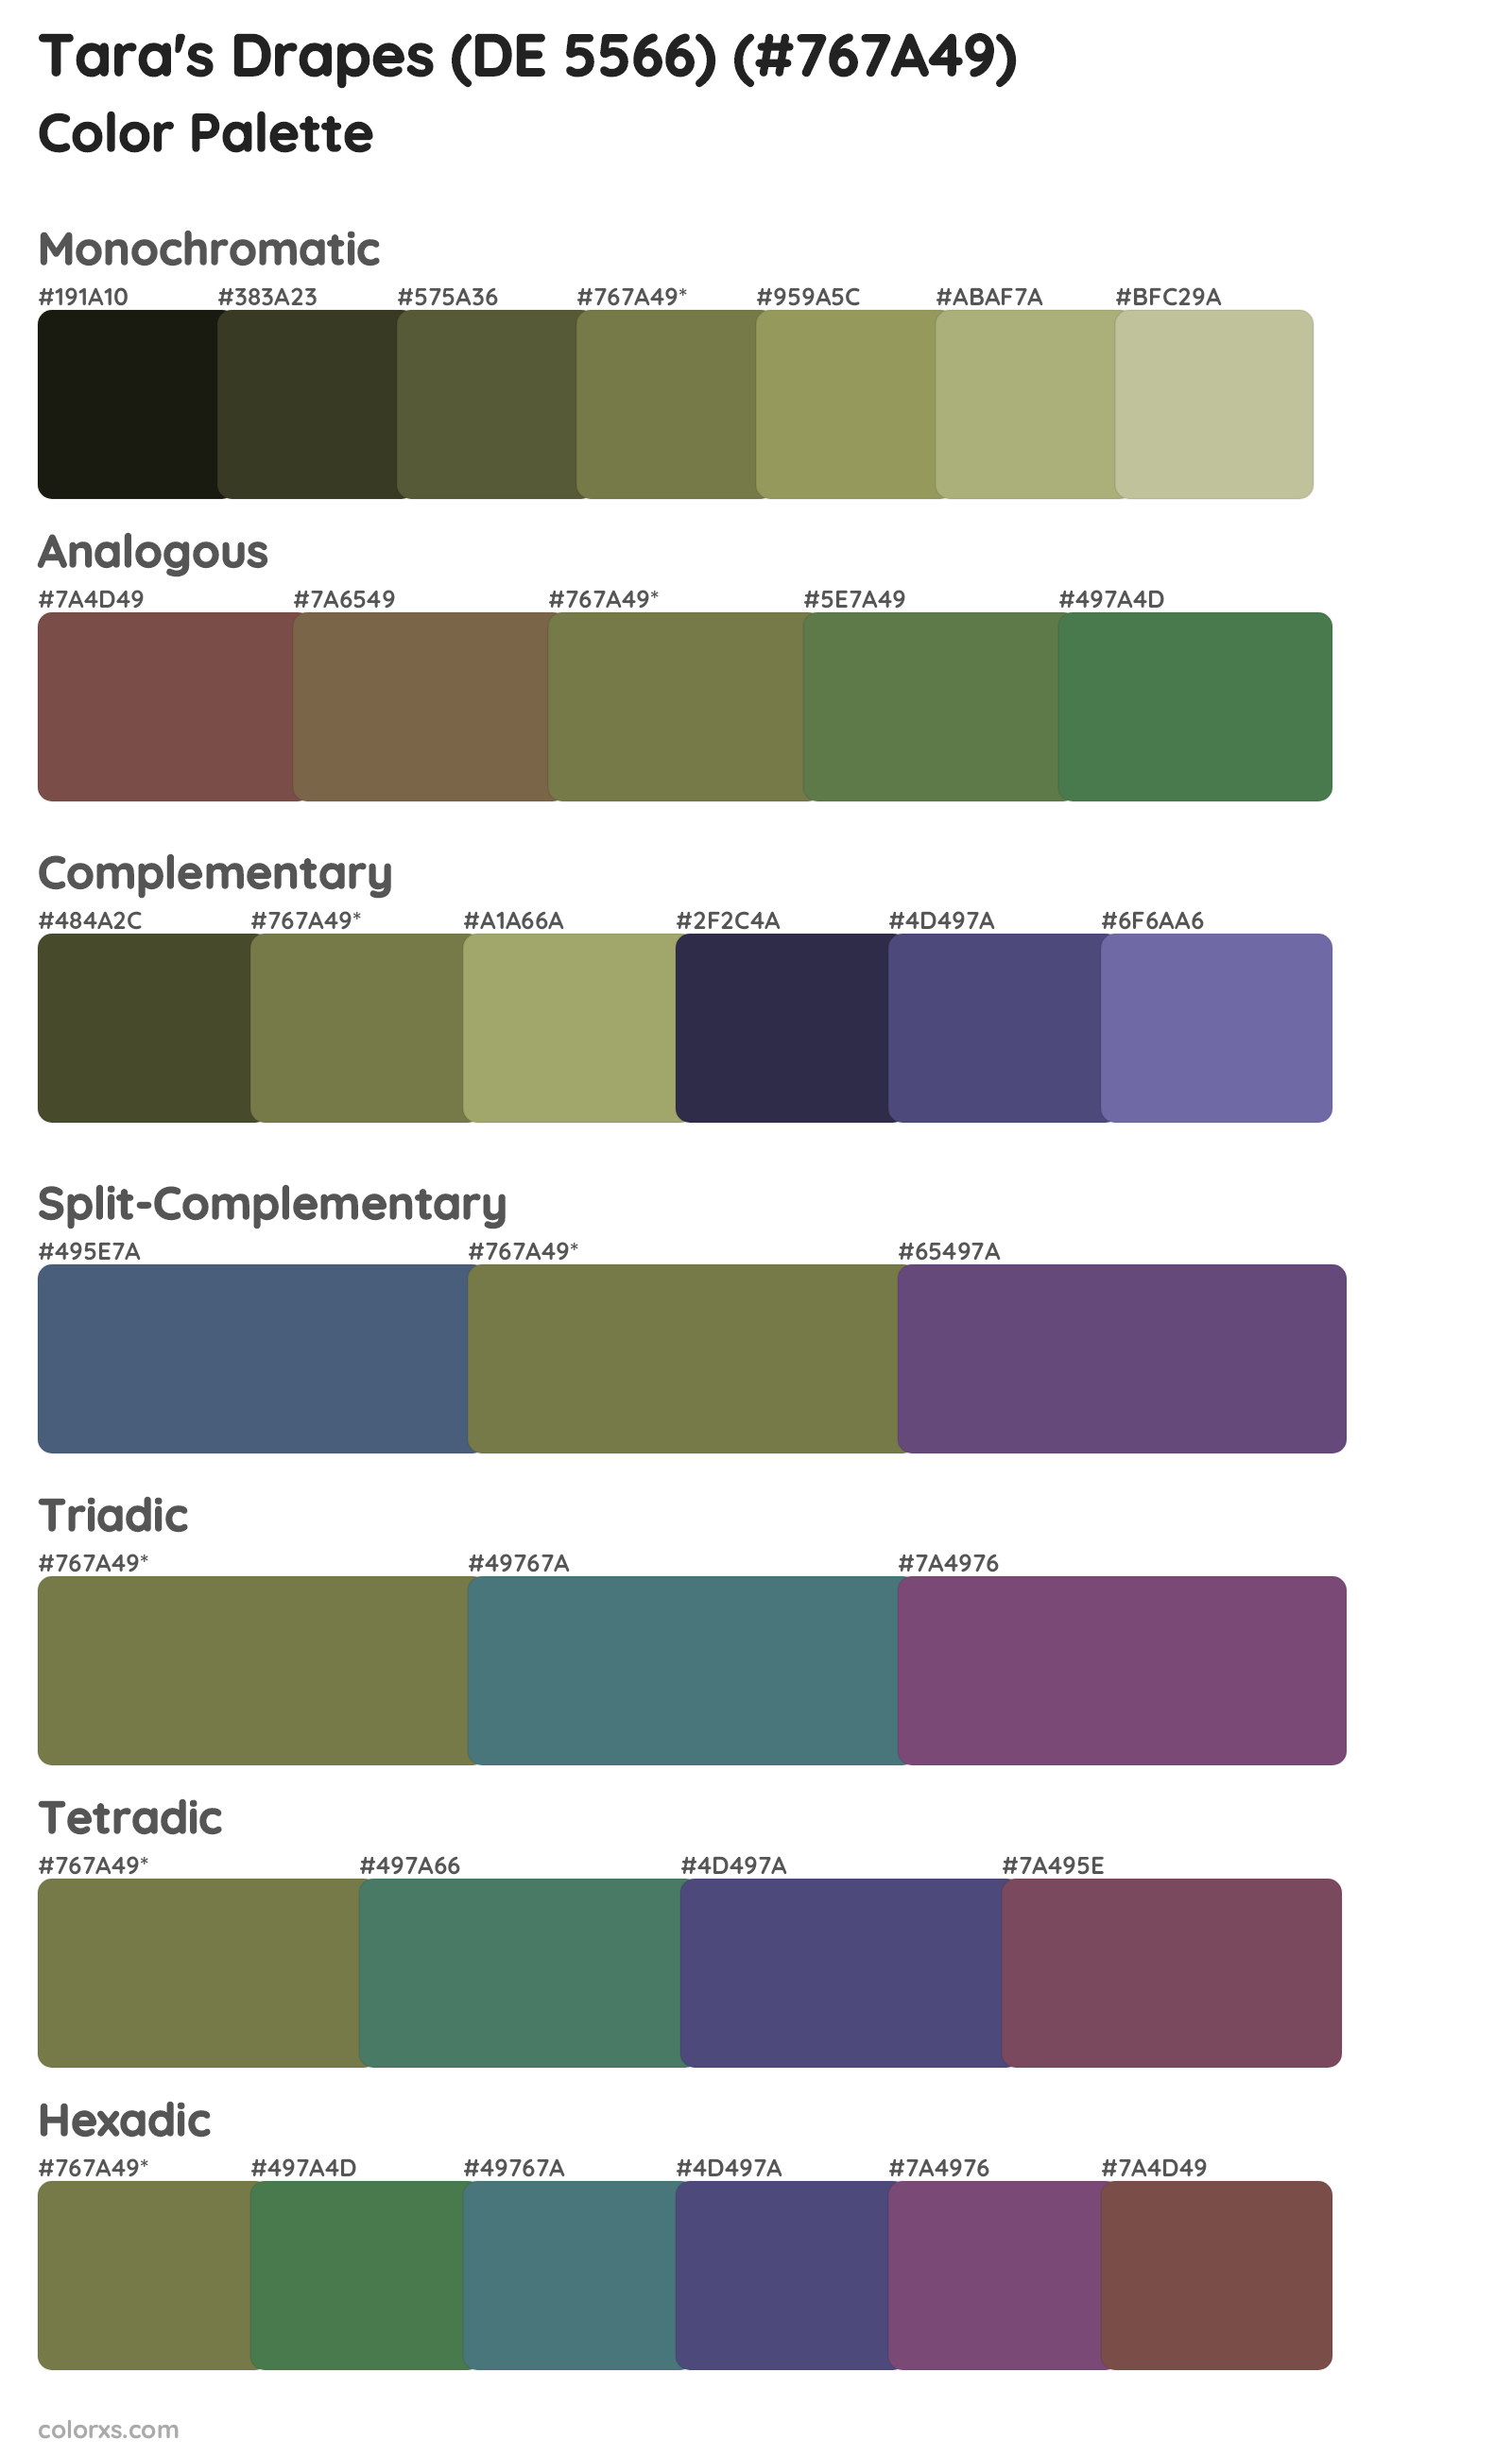 Tara's Drapes (DE 5566) Color Scheme Palettes